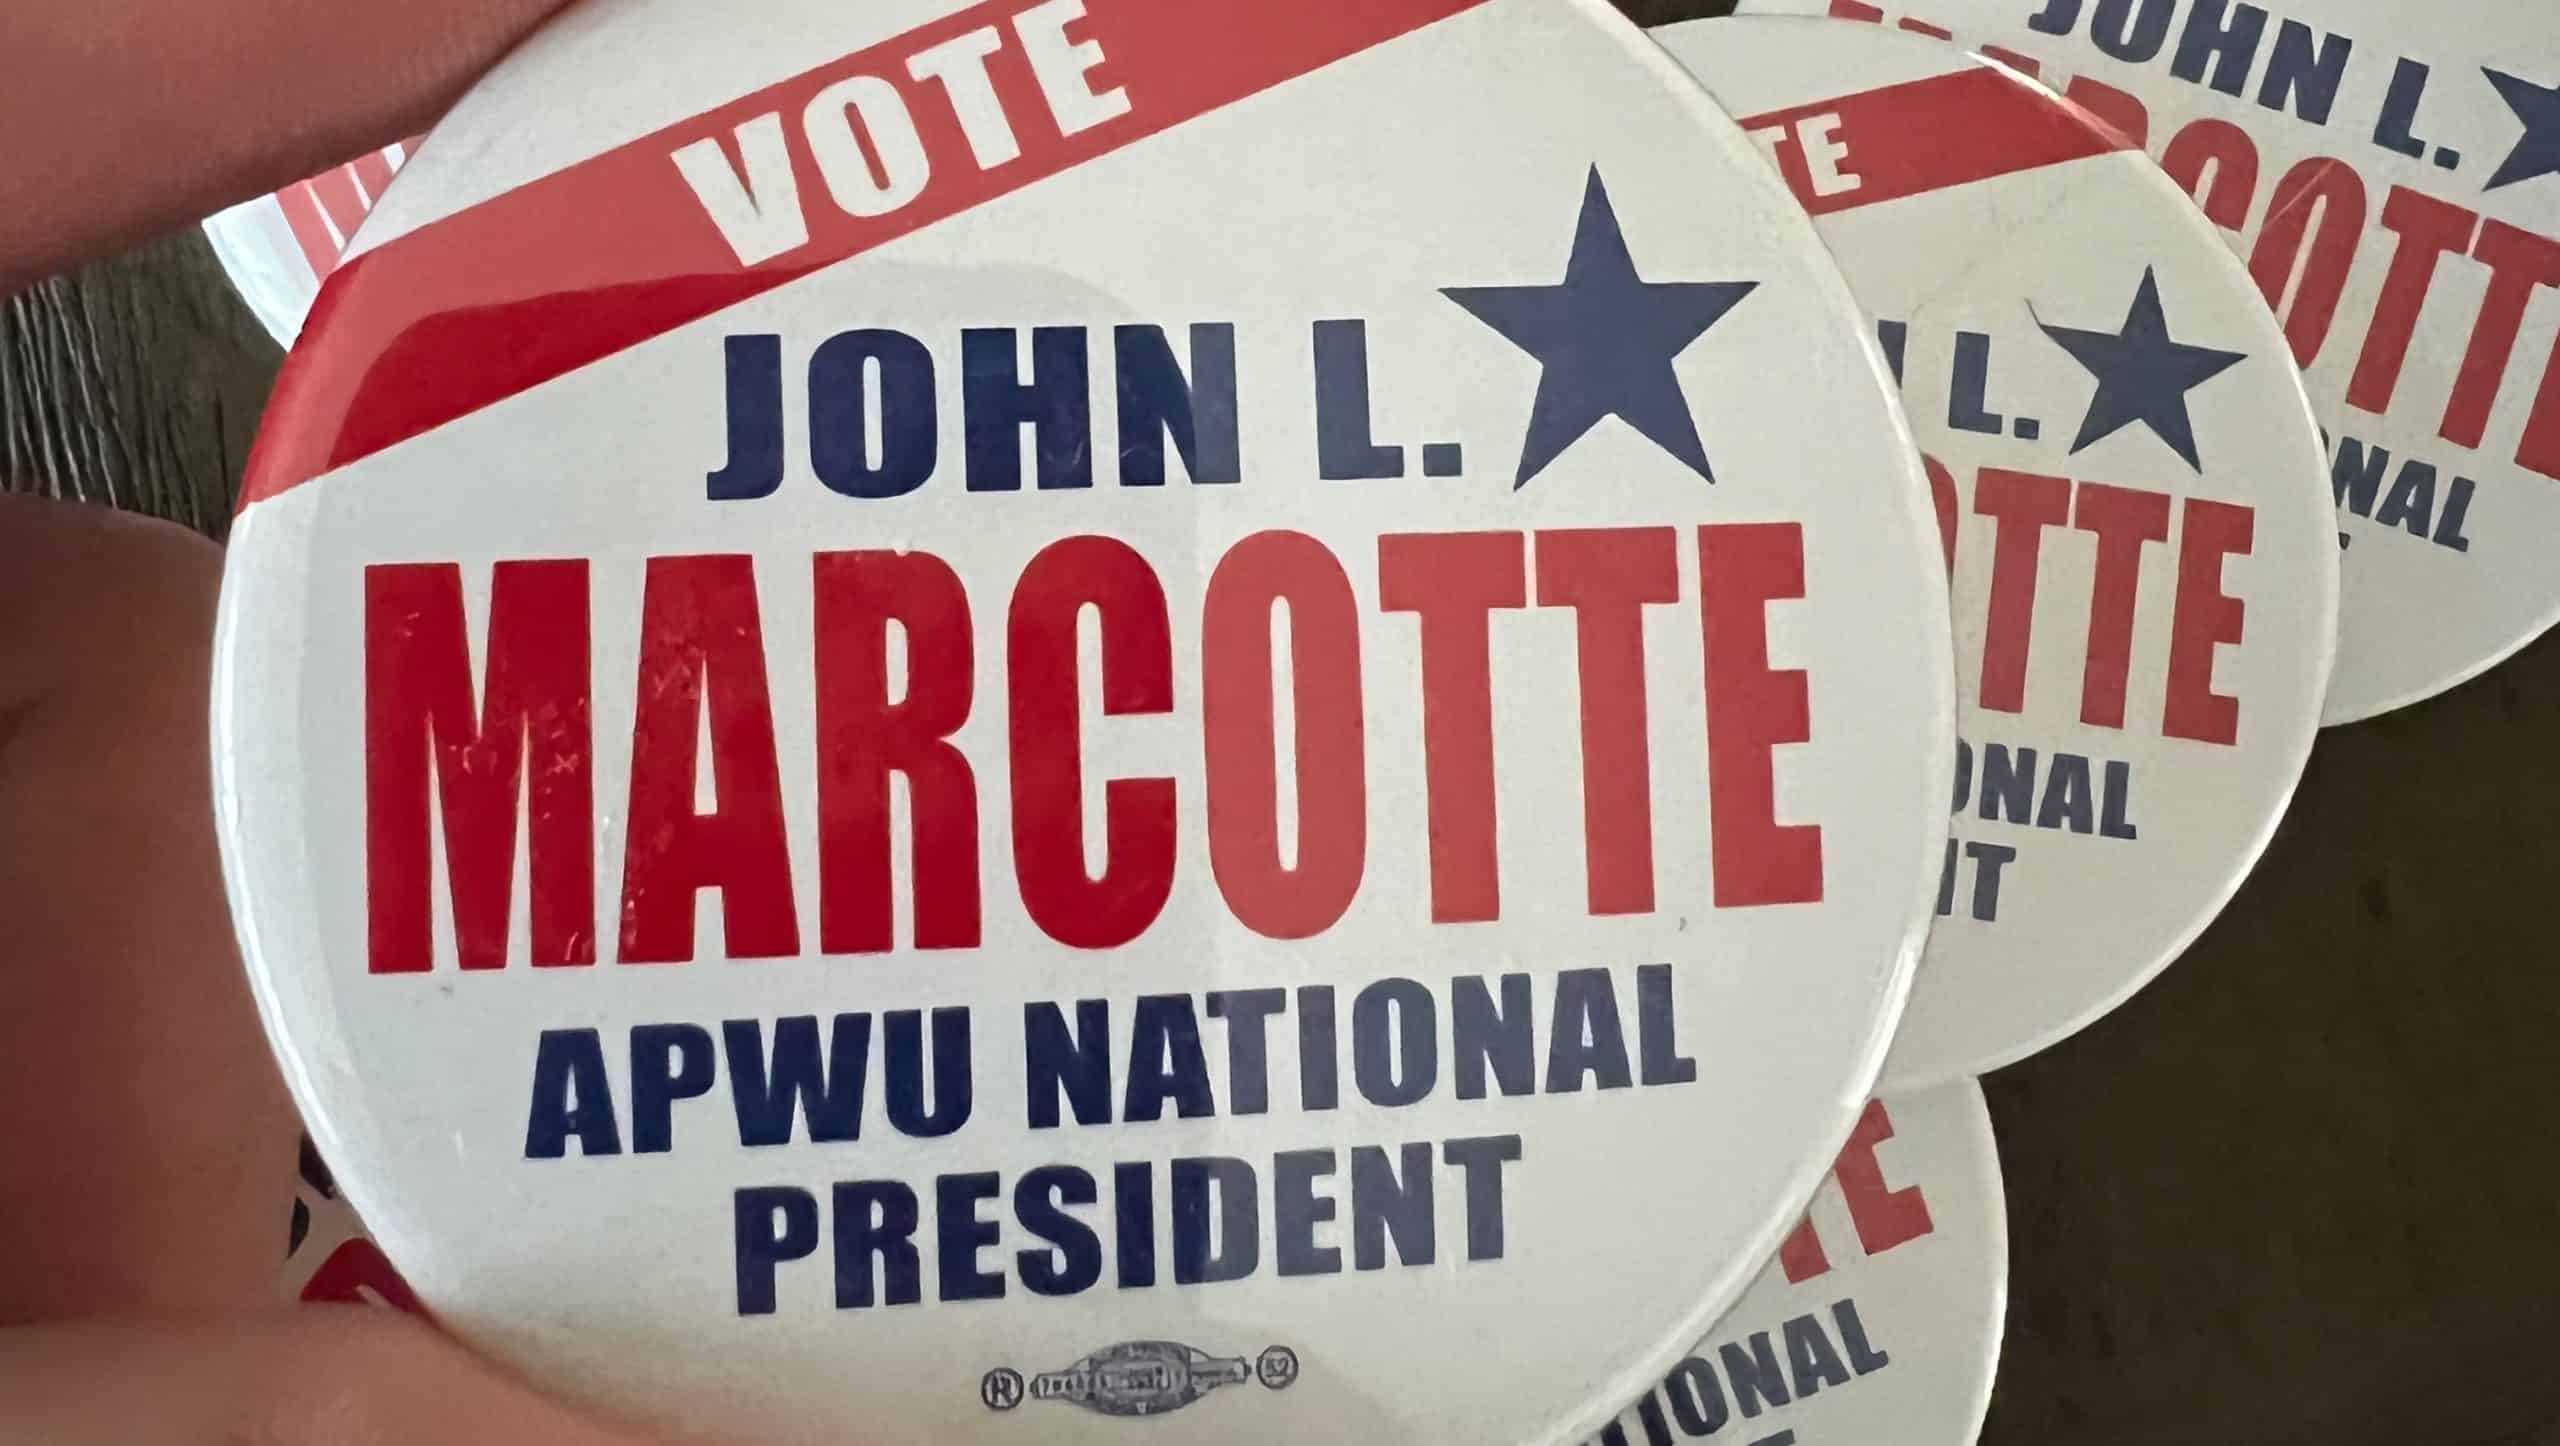 John Marcotte for APWU president